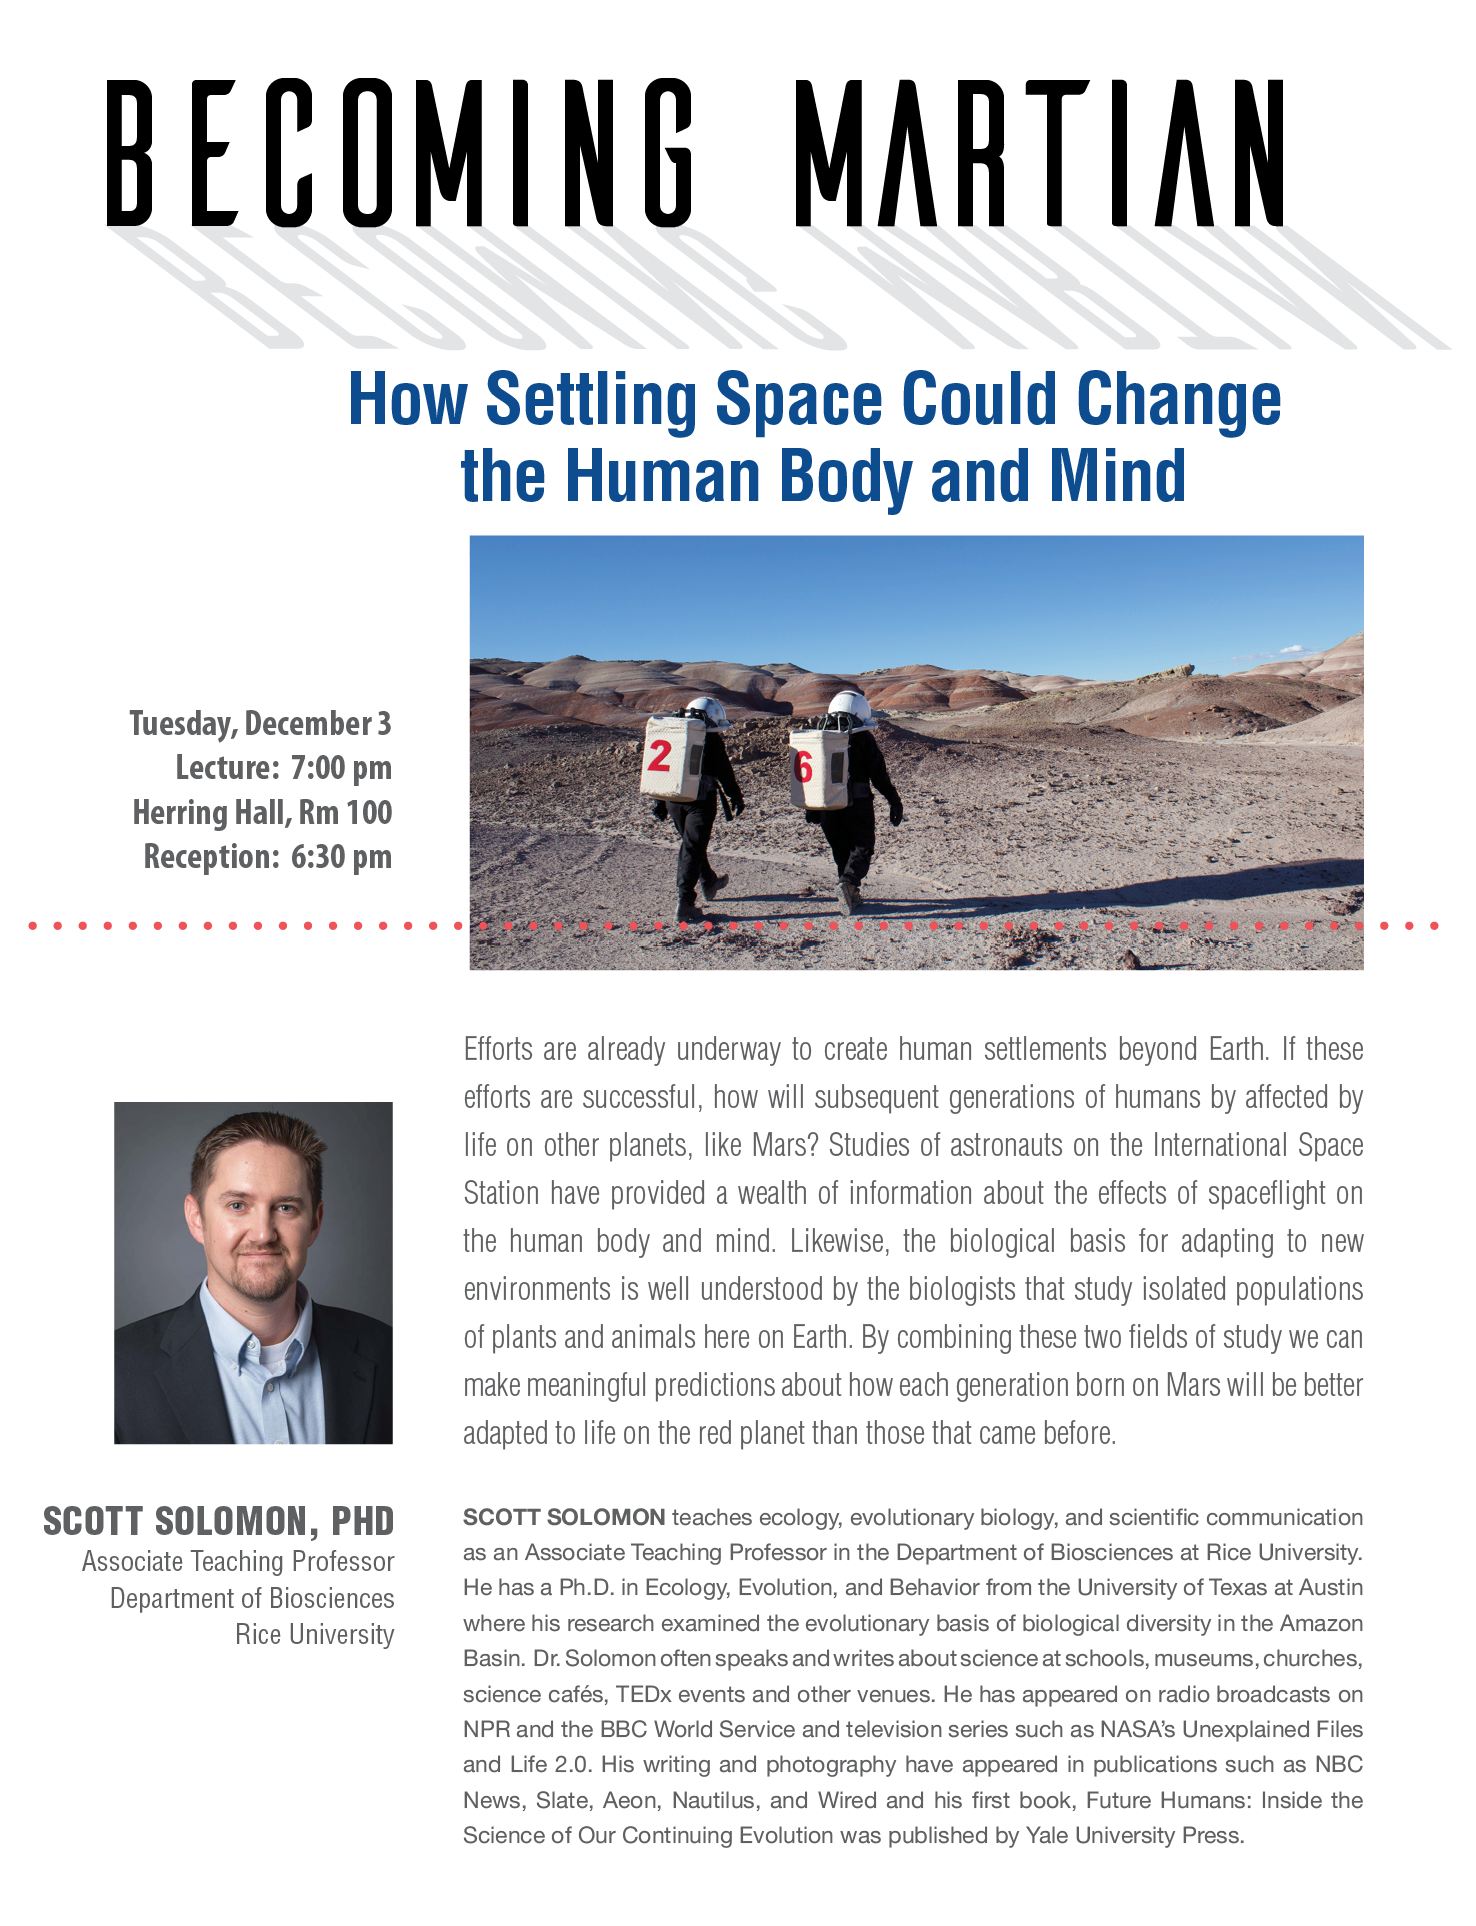 Presentation poster for "Becoming Martian - Scott Solomon"